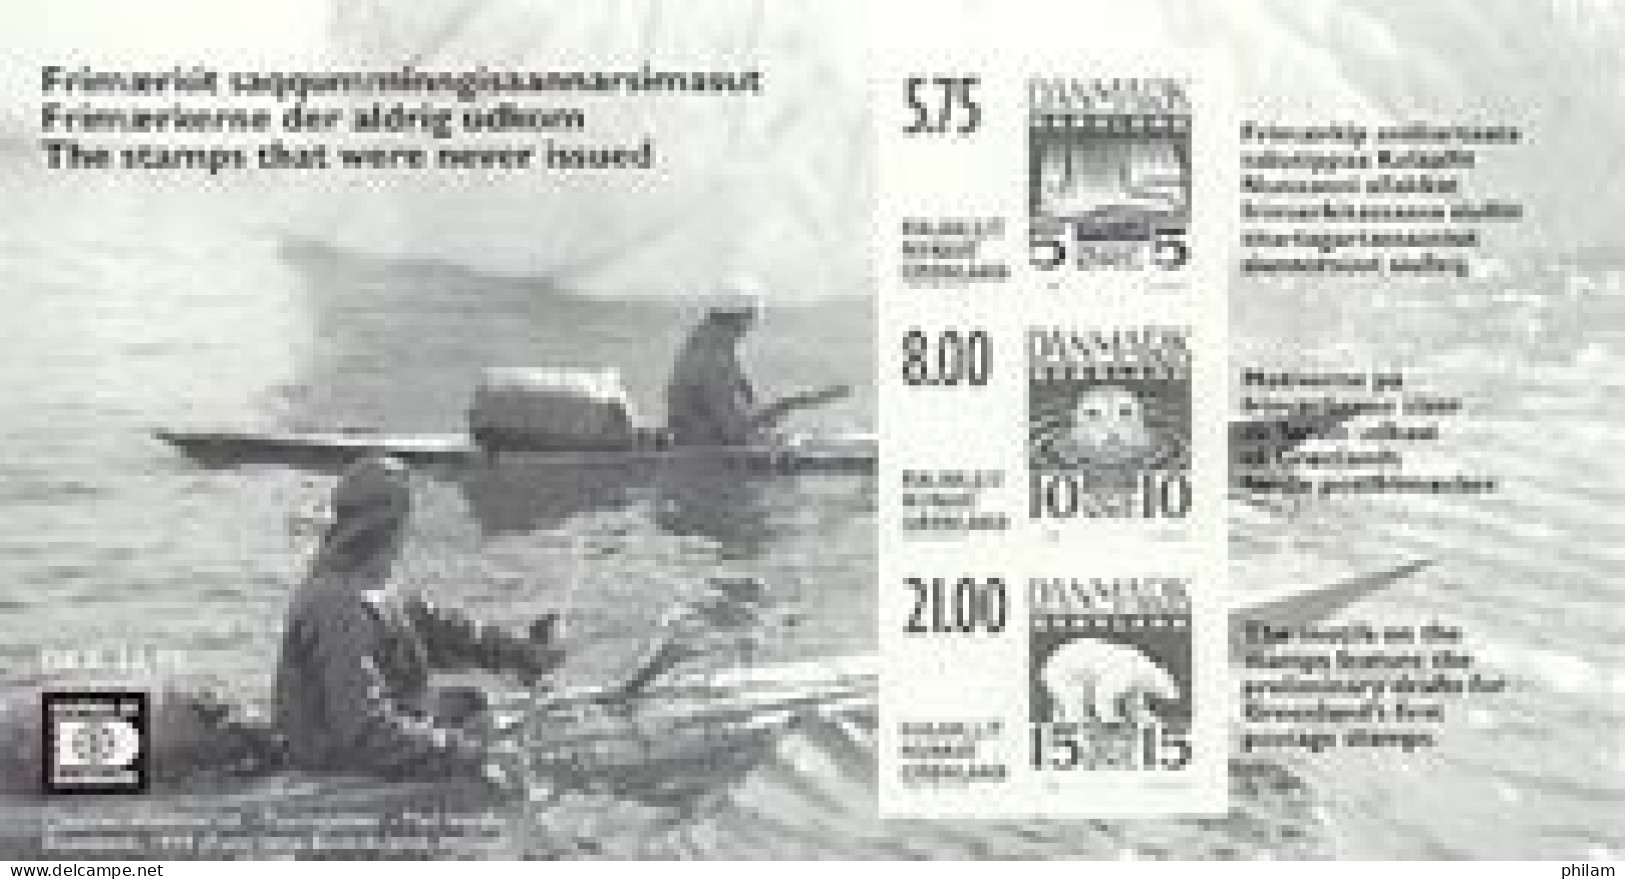 GROENLAND 2001 - Projets De Timbres Non émis - Bloc Tiré En Noir - Bears